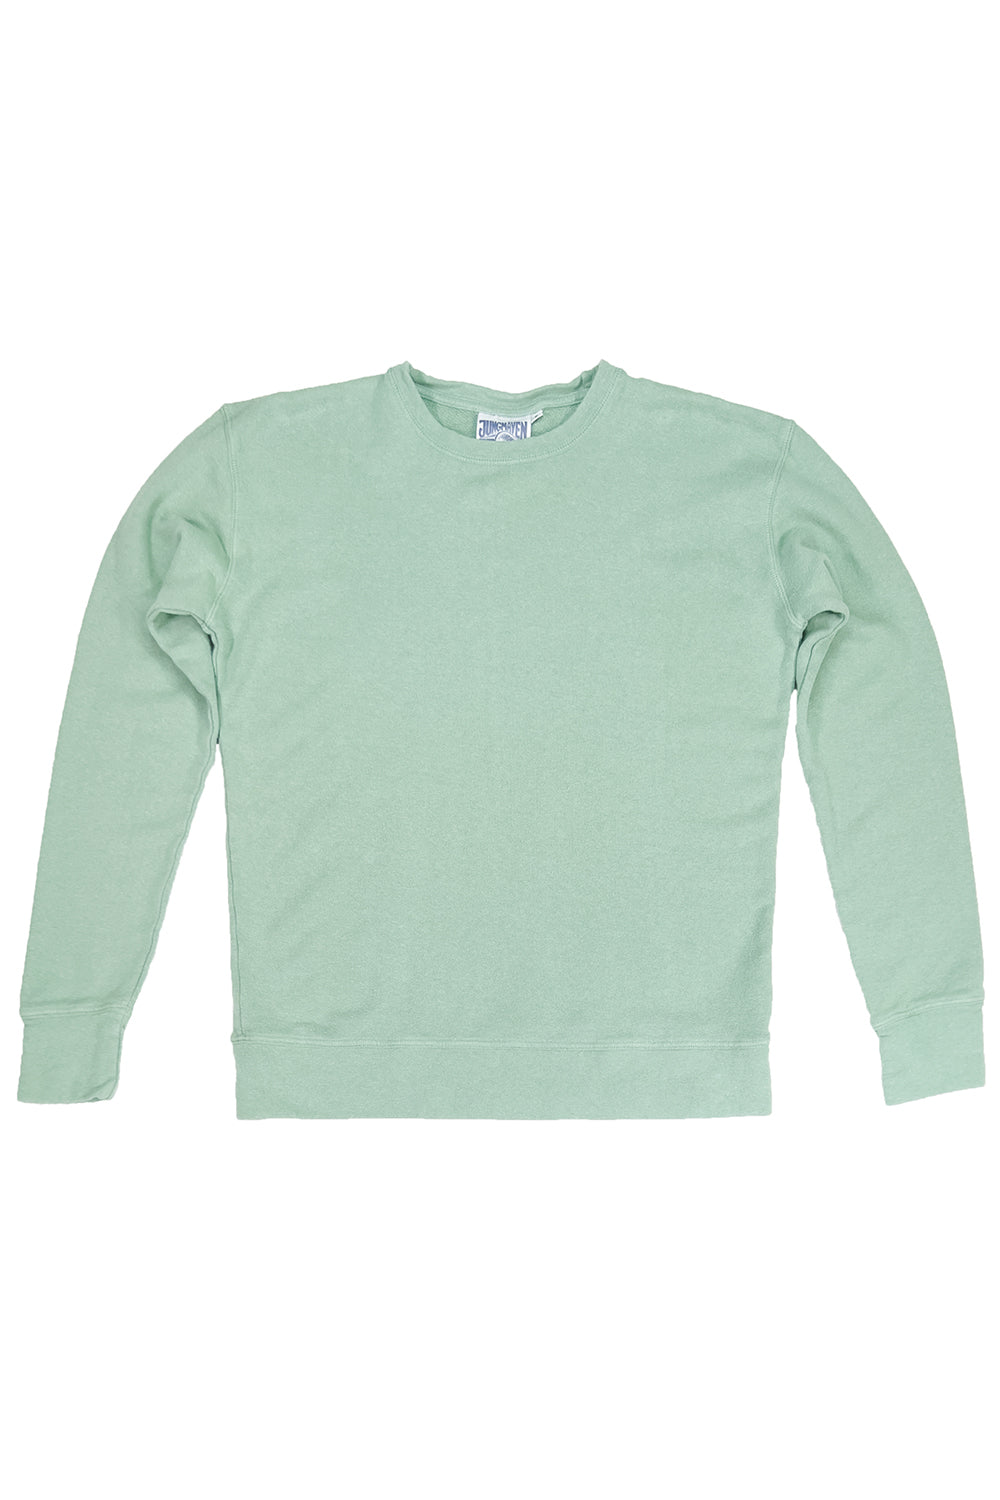 Tahoe Sweatshirt | Jungmaven Hemp Clothing & Accessories / Color: Sage Green